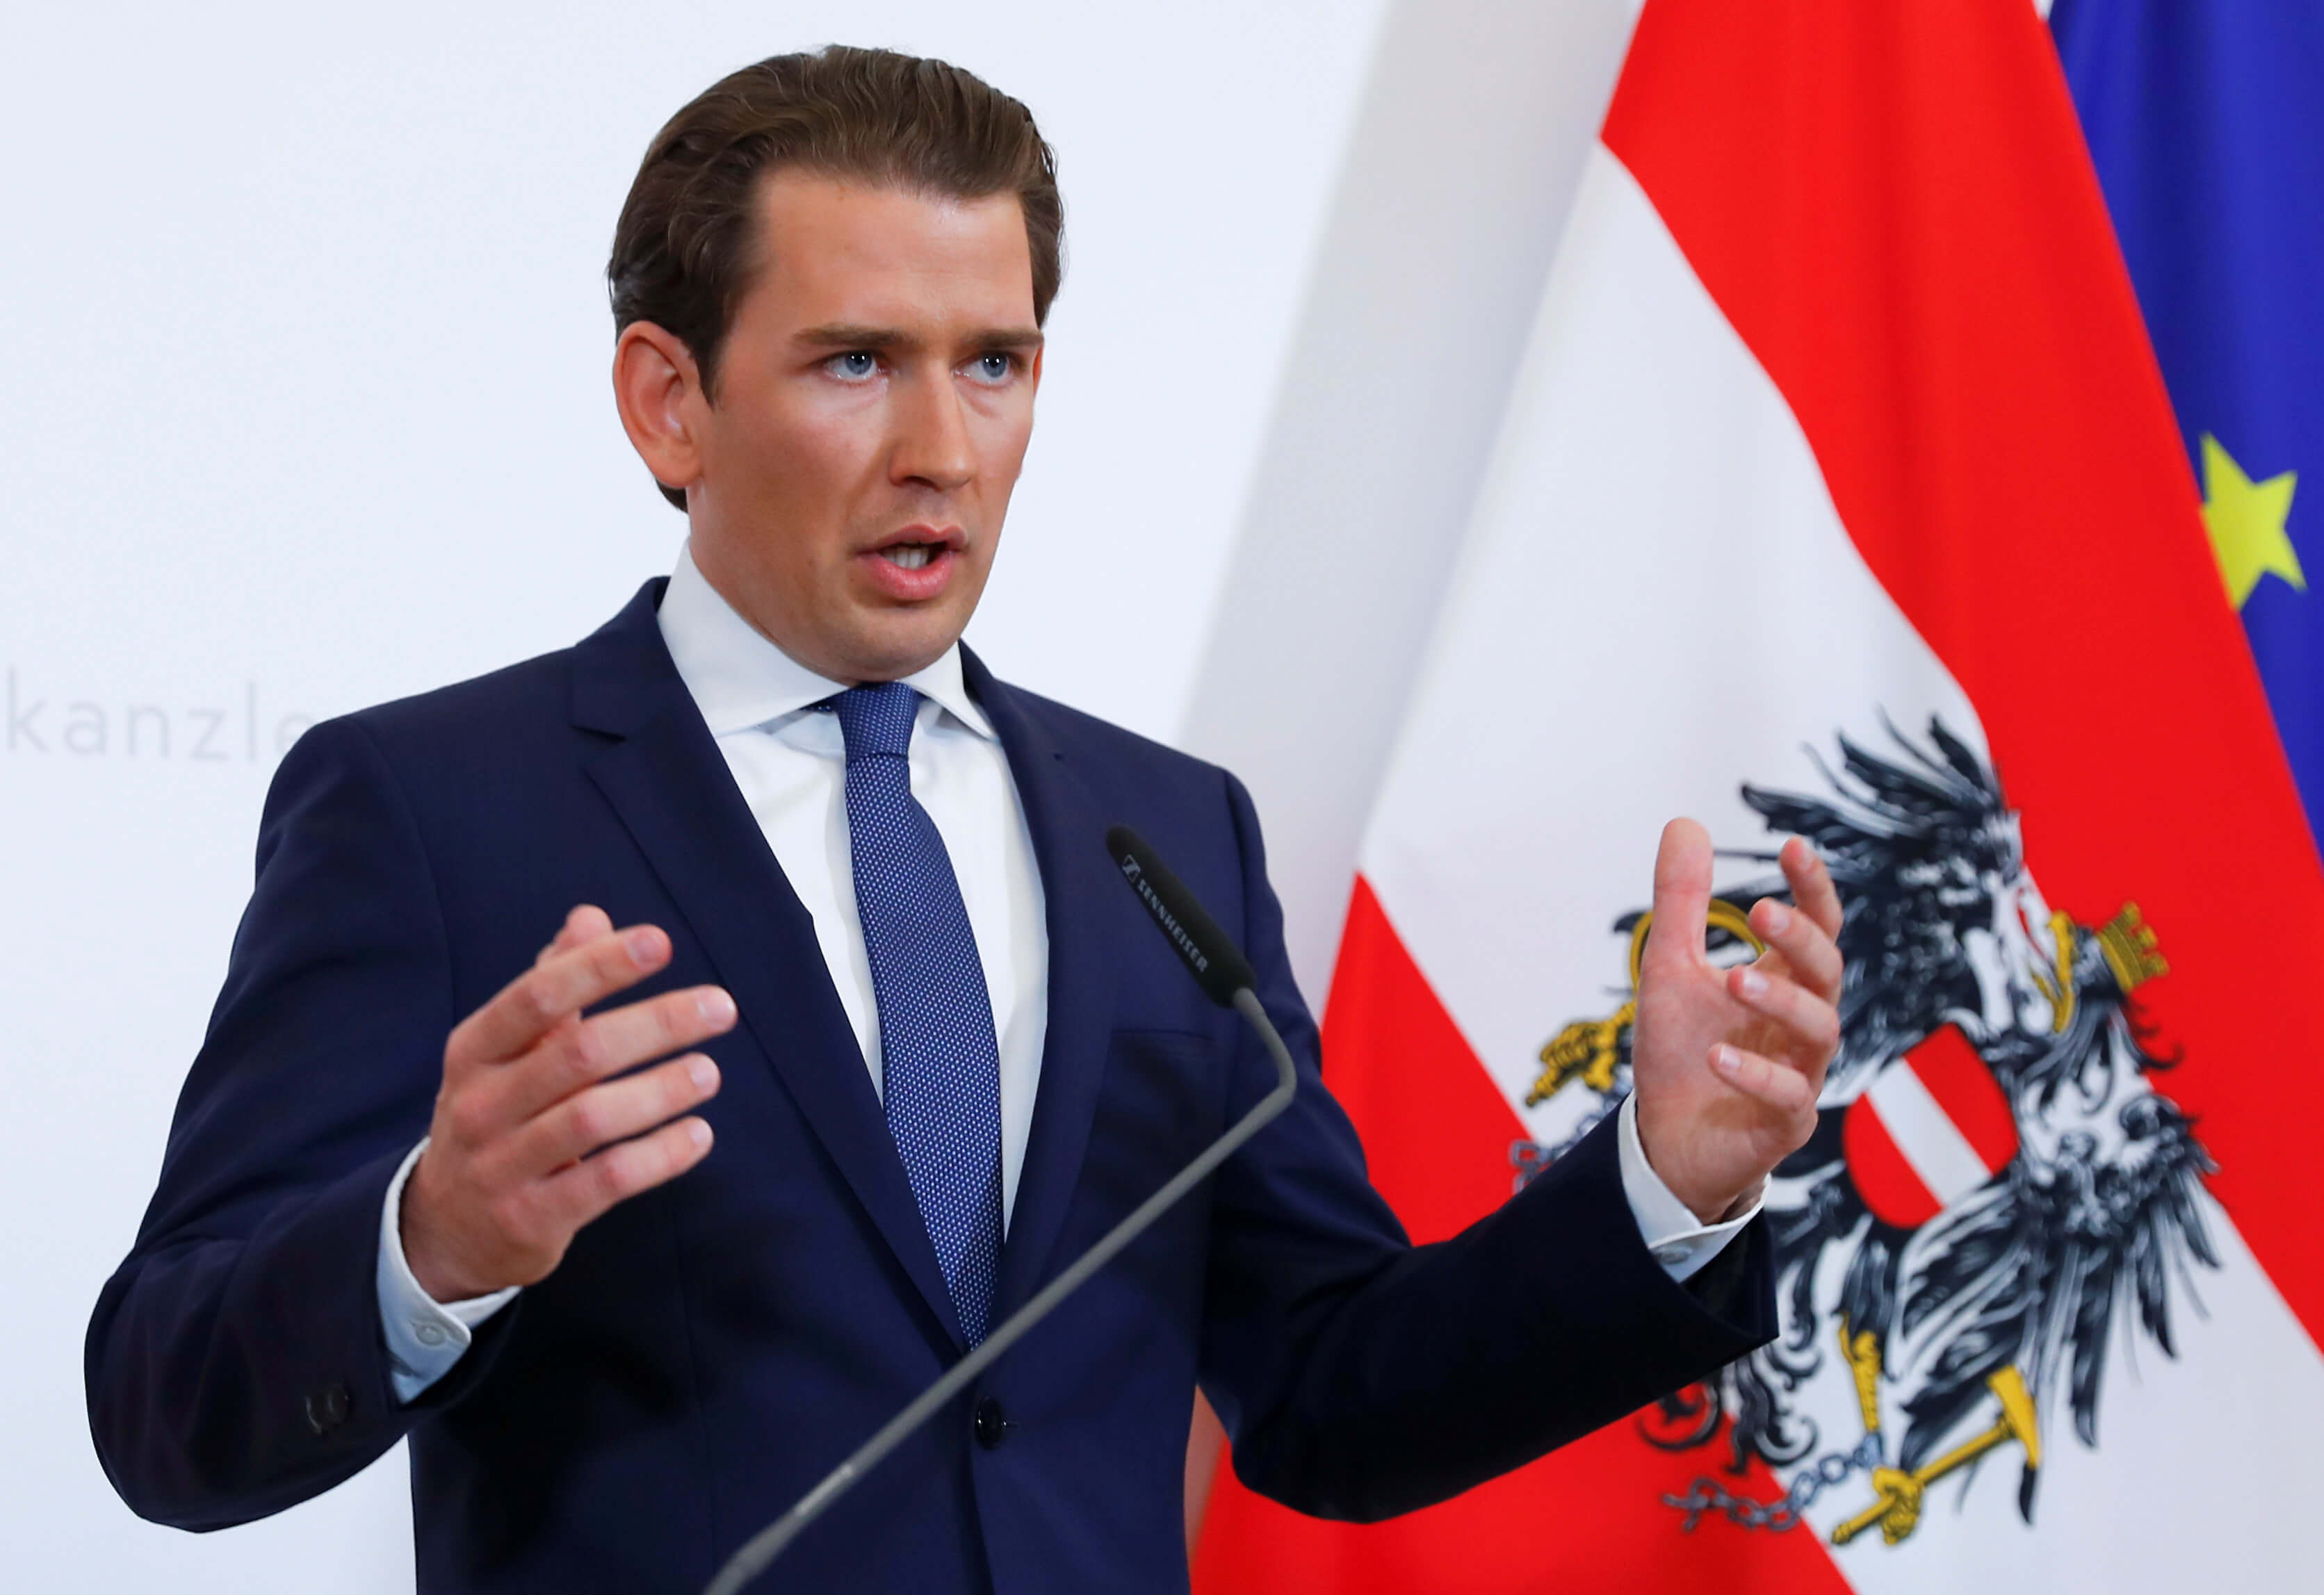 Σκάνδαλο Αυστρία: Για αντισημιτισμό κατηγορείται ο καγκελάριος Κουρτς